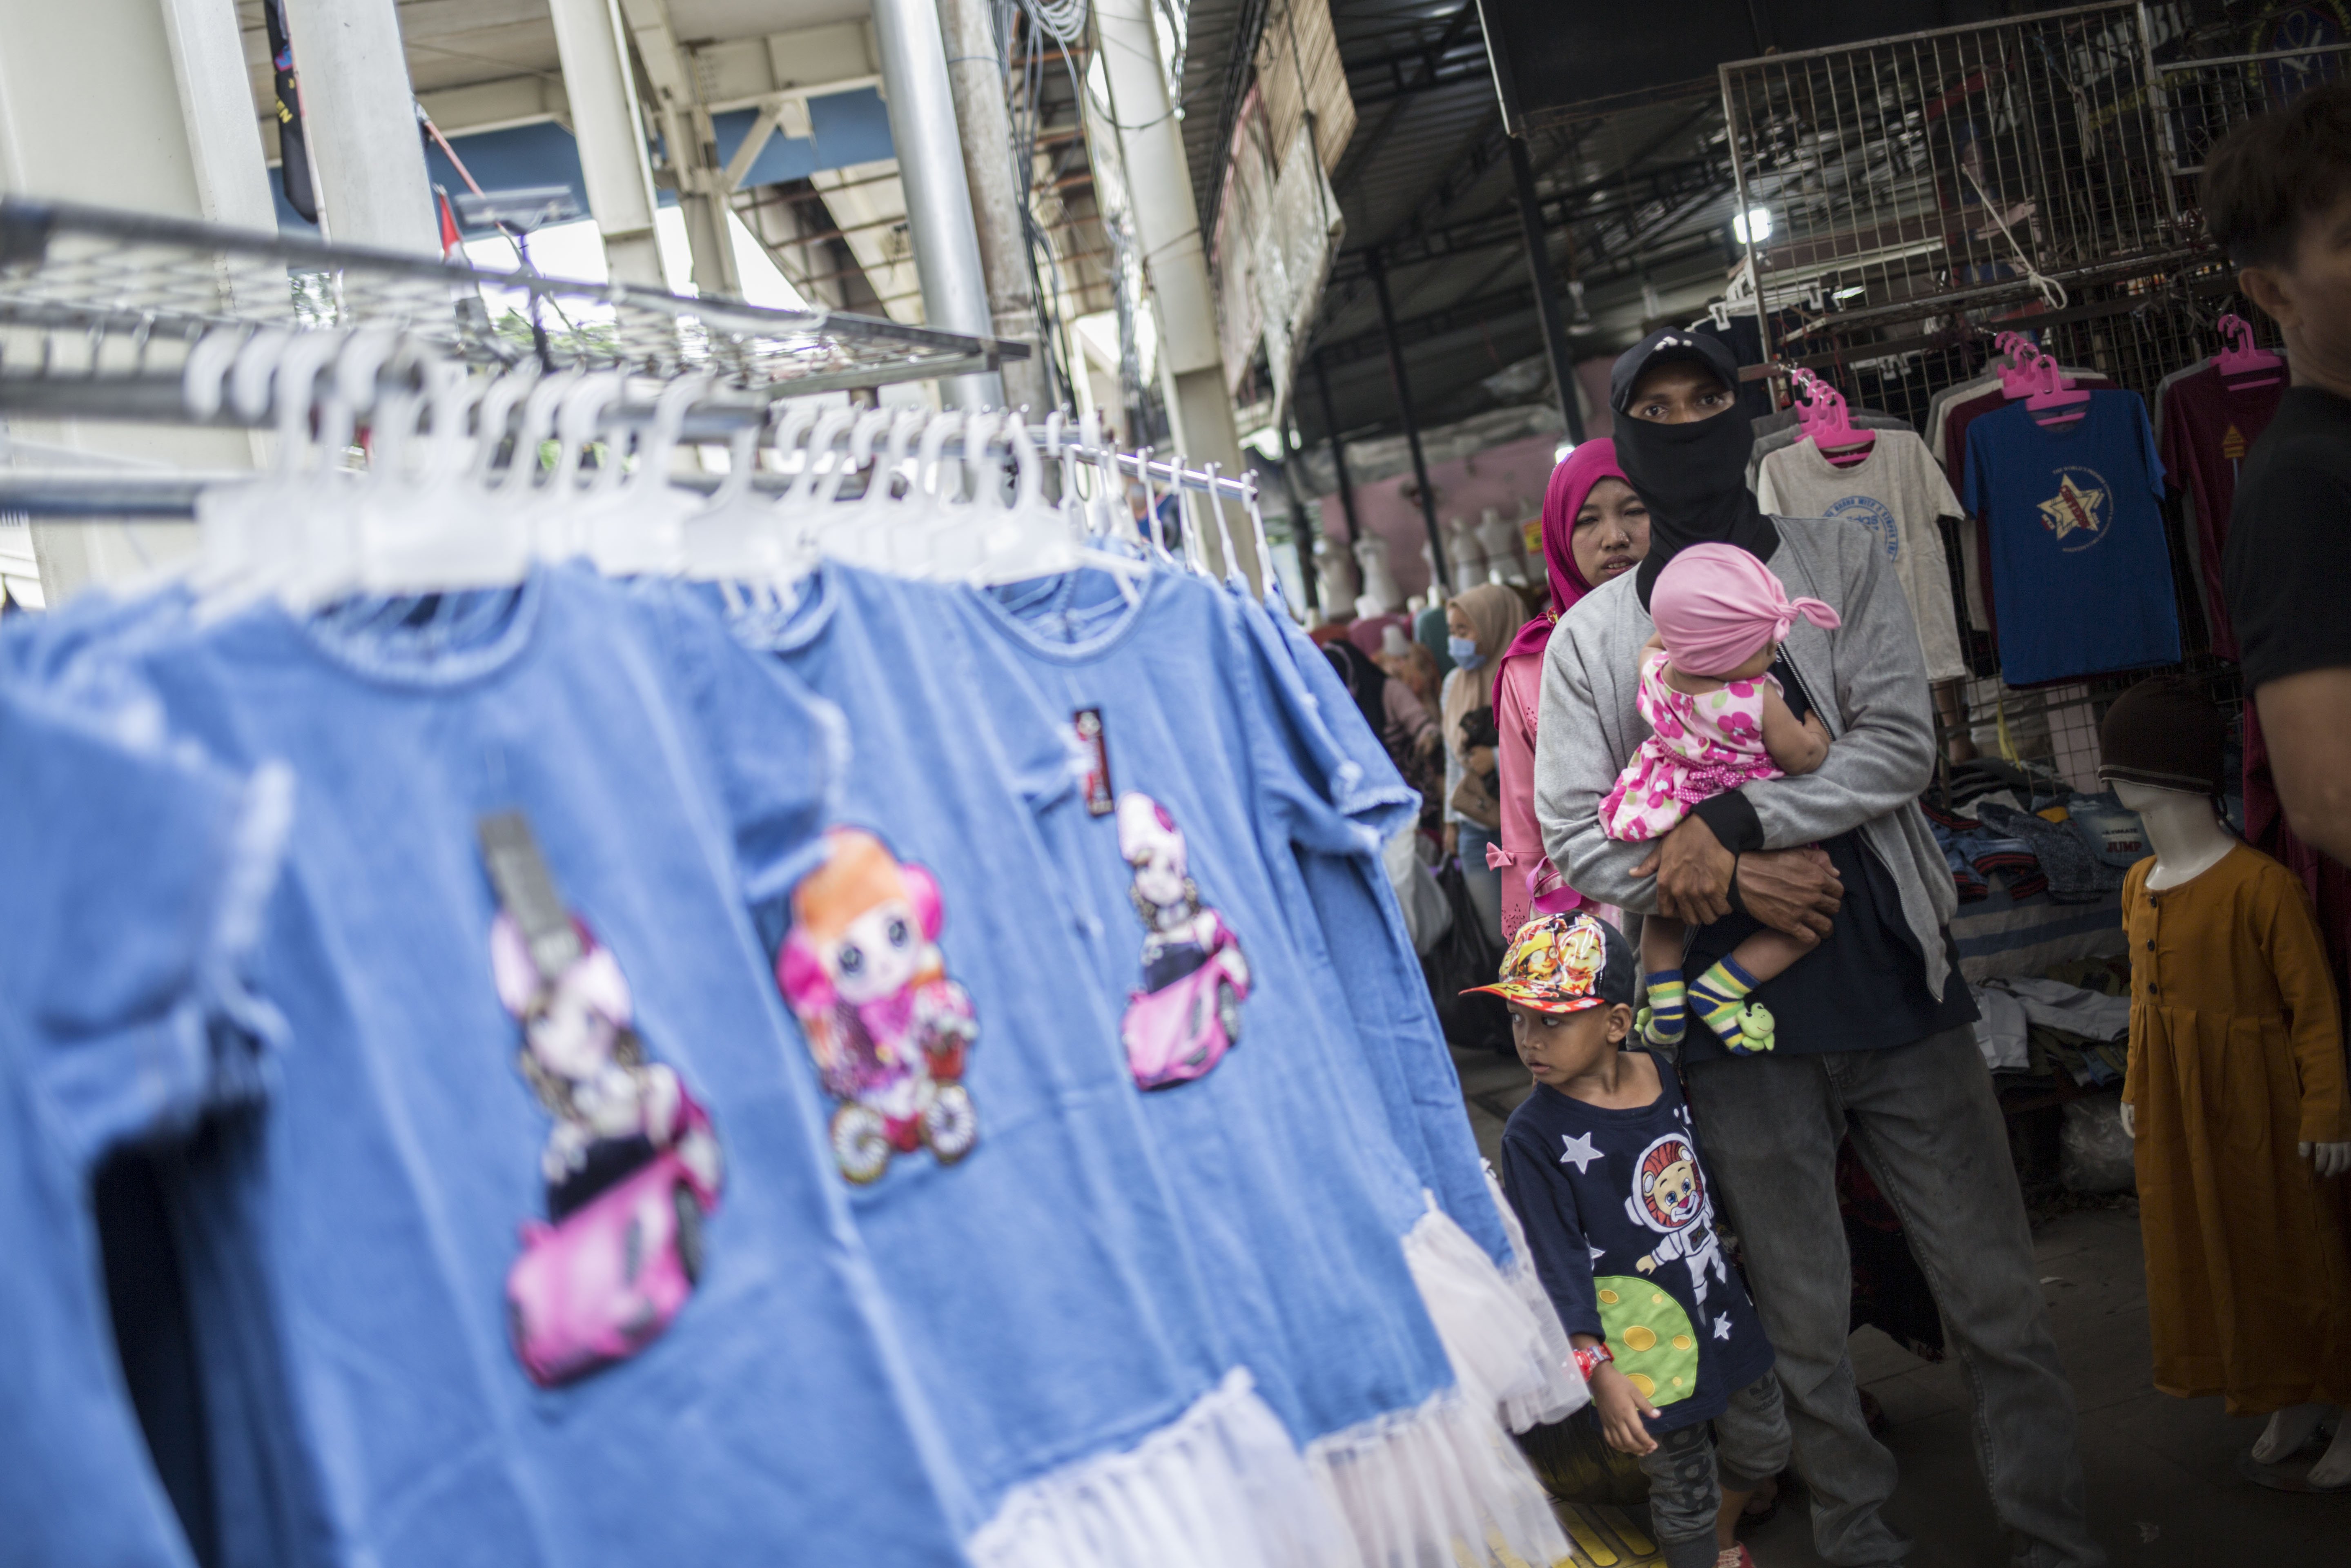 Warga berbelanja pakaian yang dijual pedagang kaki lima di atas trotoar Jalan Jati Baru Raya, Tanah Abang, Jakarta, Senin (18/5/2020). Meski kawasan niaga Pasar Tanah Abang telah tutup selama masa Pembatasan Sosial Berskala Besar (PSBB), namun sebagian pedagang tetap menggelar lapaknya di sejumlah titik seperti di atas trotoar dan di gang perkampungan setempat.